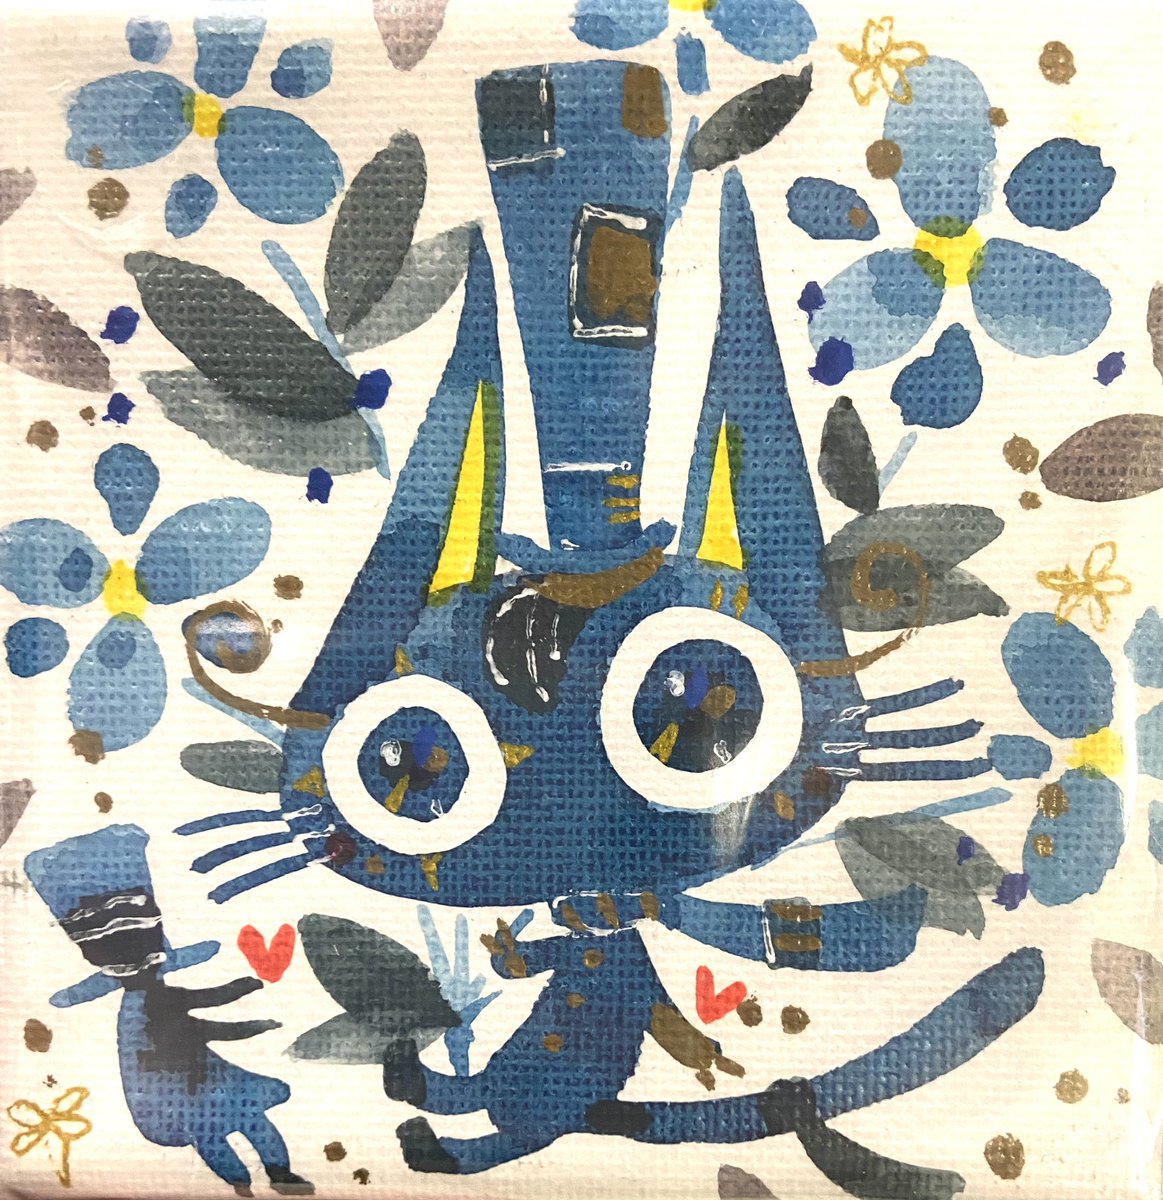 「猫物語」|ほんだ猫 (不思議風景と猫を描くぶるべり)のイラスト